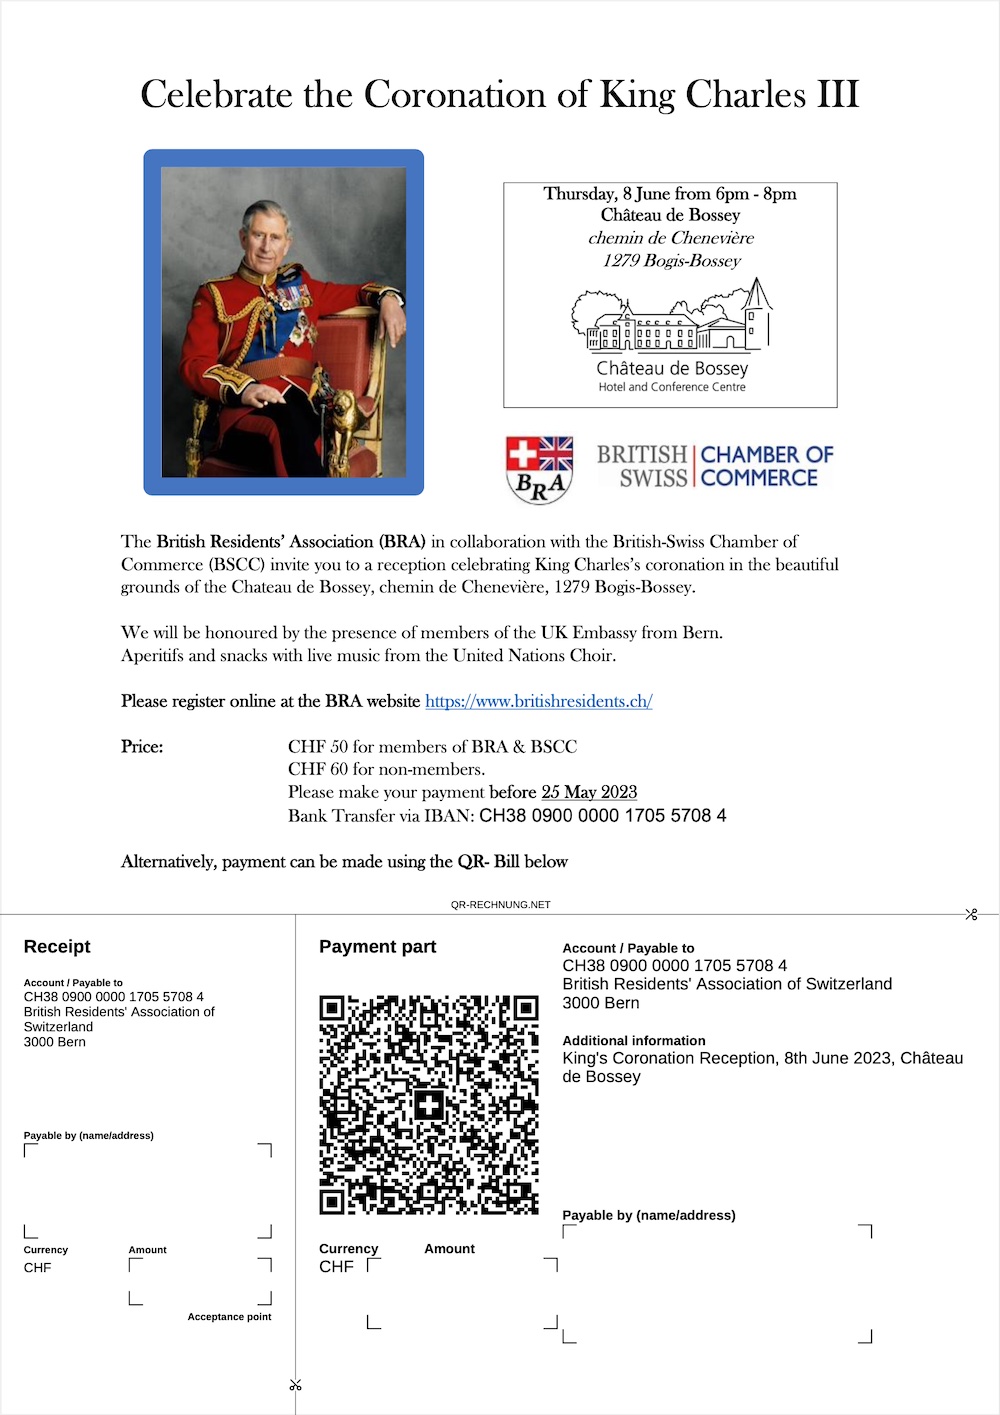 CORONATION QR Bill Kings Coronation Reception 8th June 2023 Château de Bossey